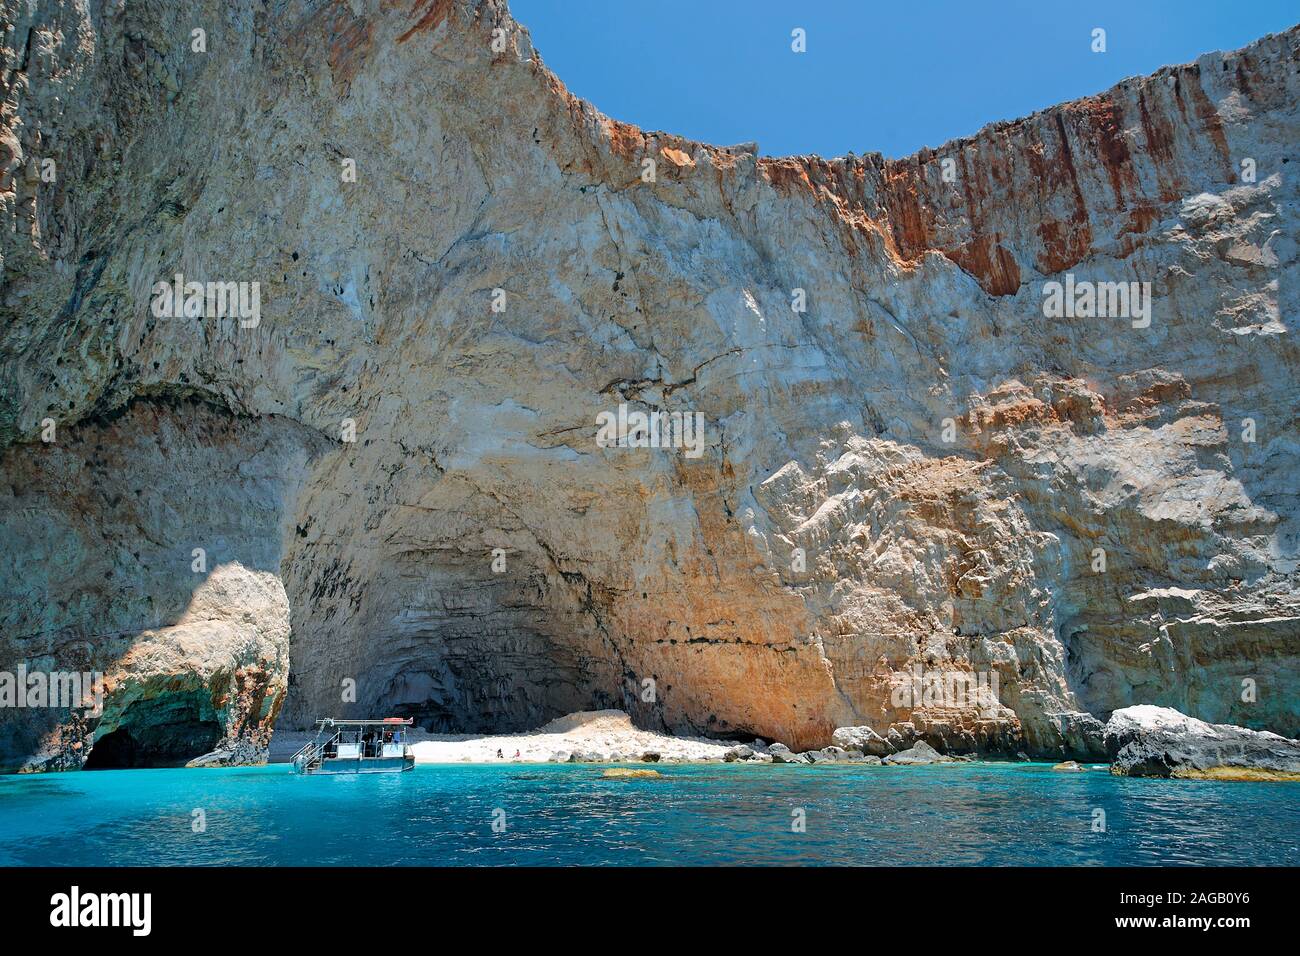 Boat at a hidden tiny beach at the rocky coast, Zakynthos island, Greece Stock Photo